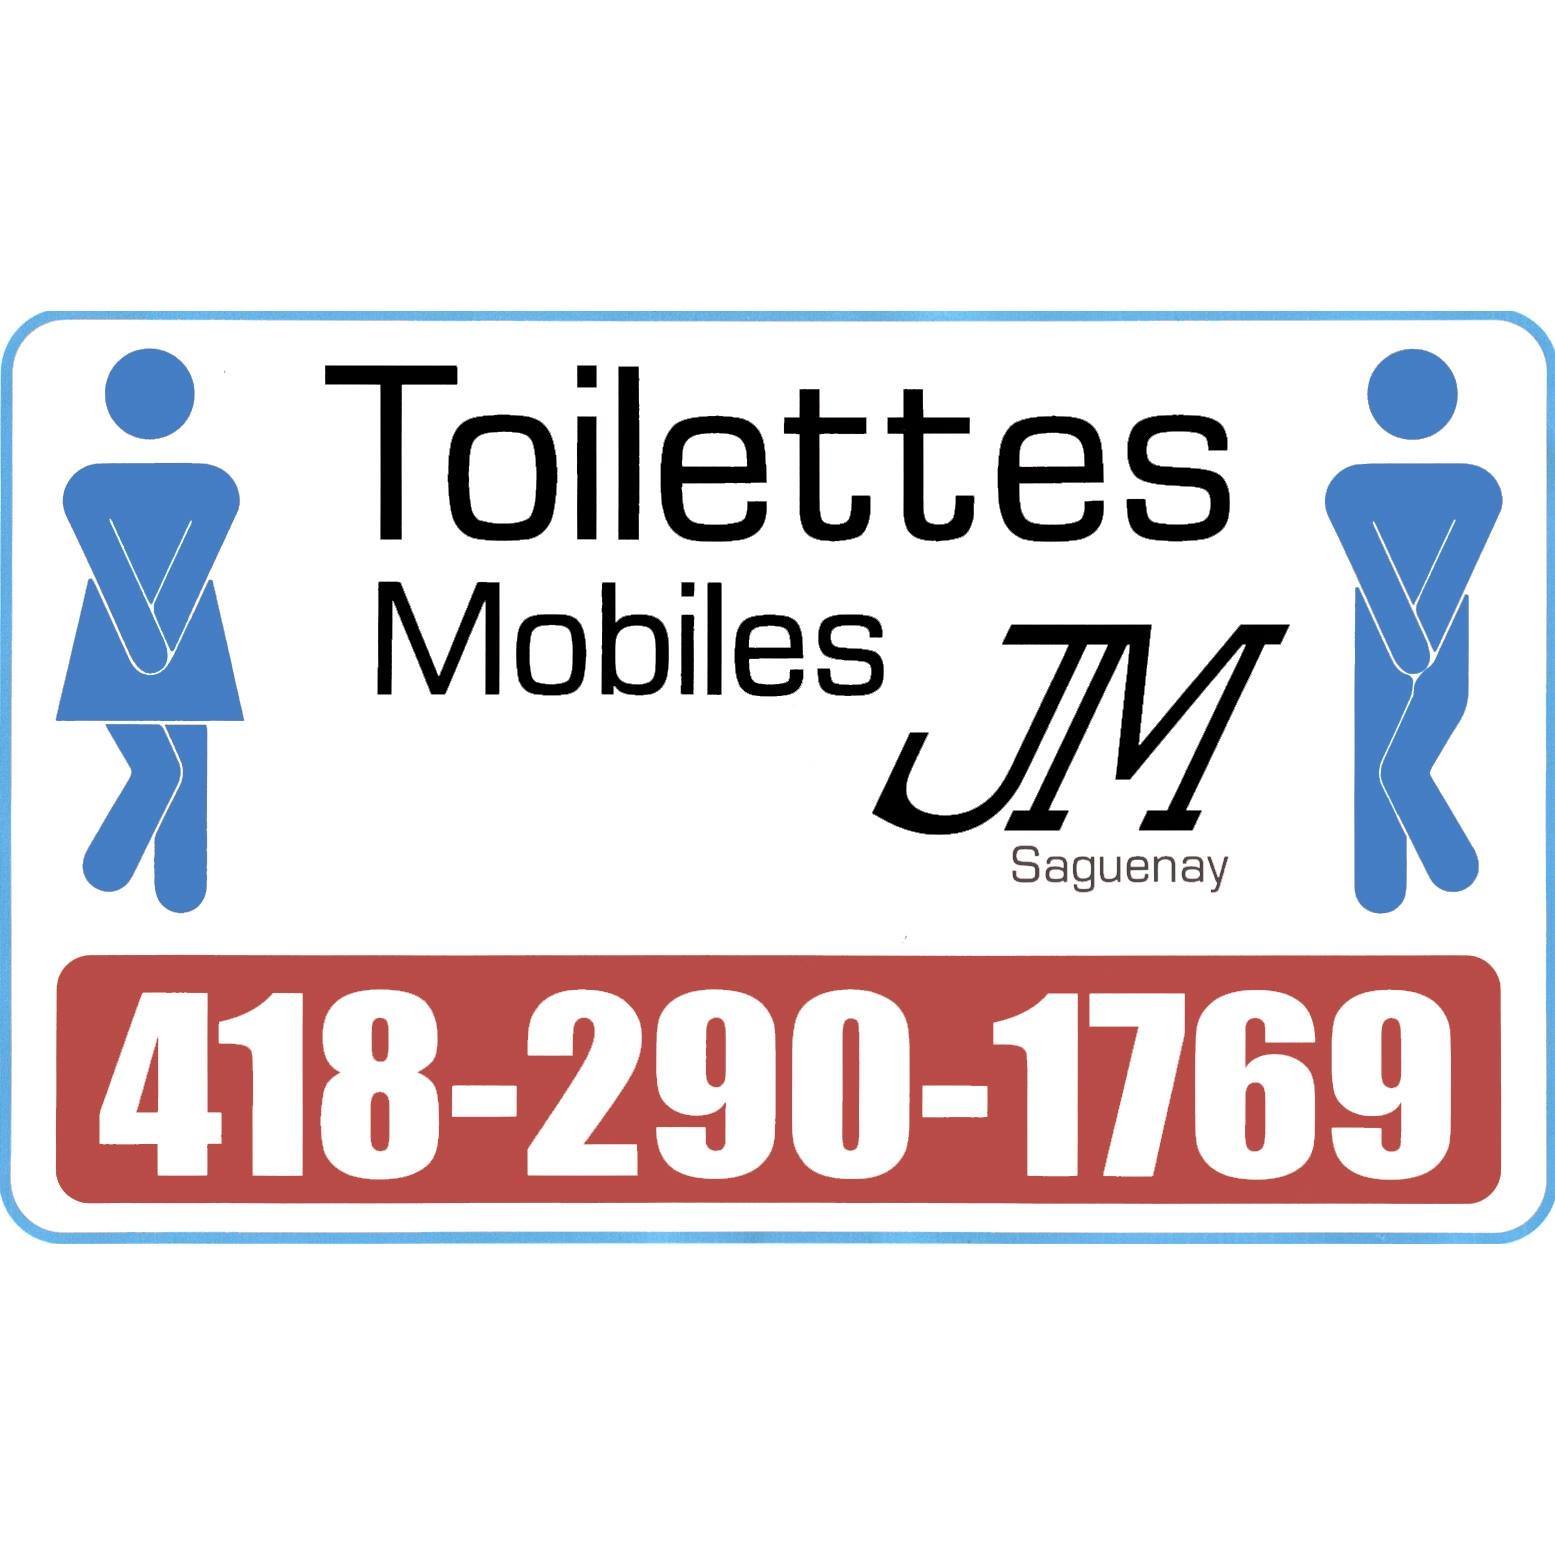 Toilettes Mobiles JM